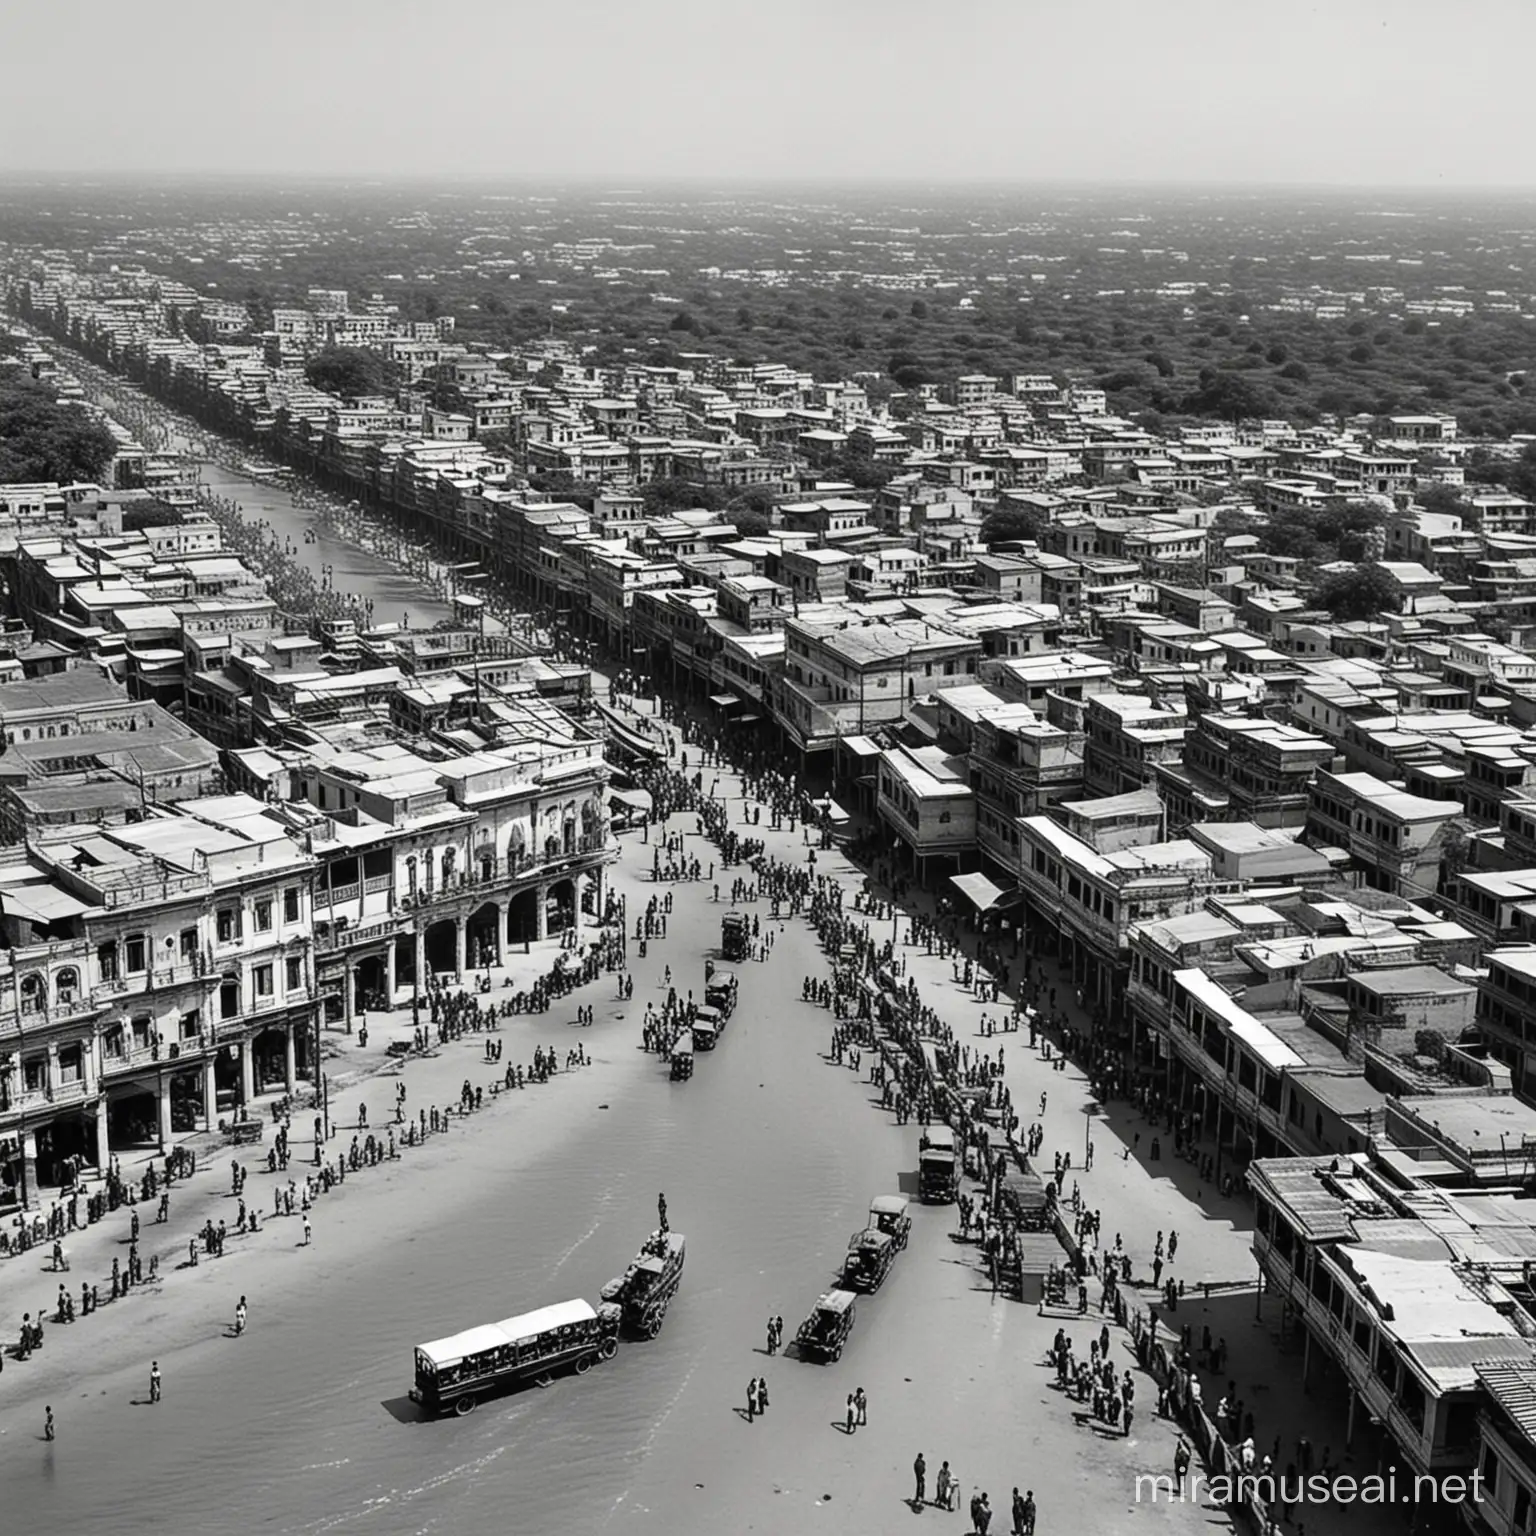 old Tamil nadu city in 1930s